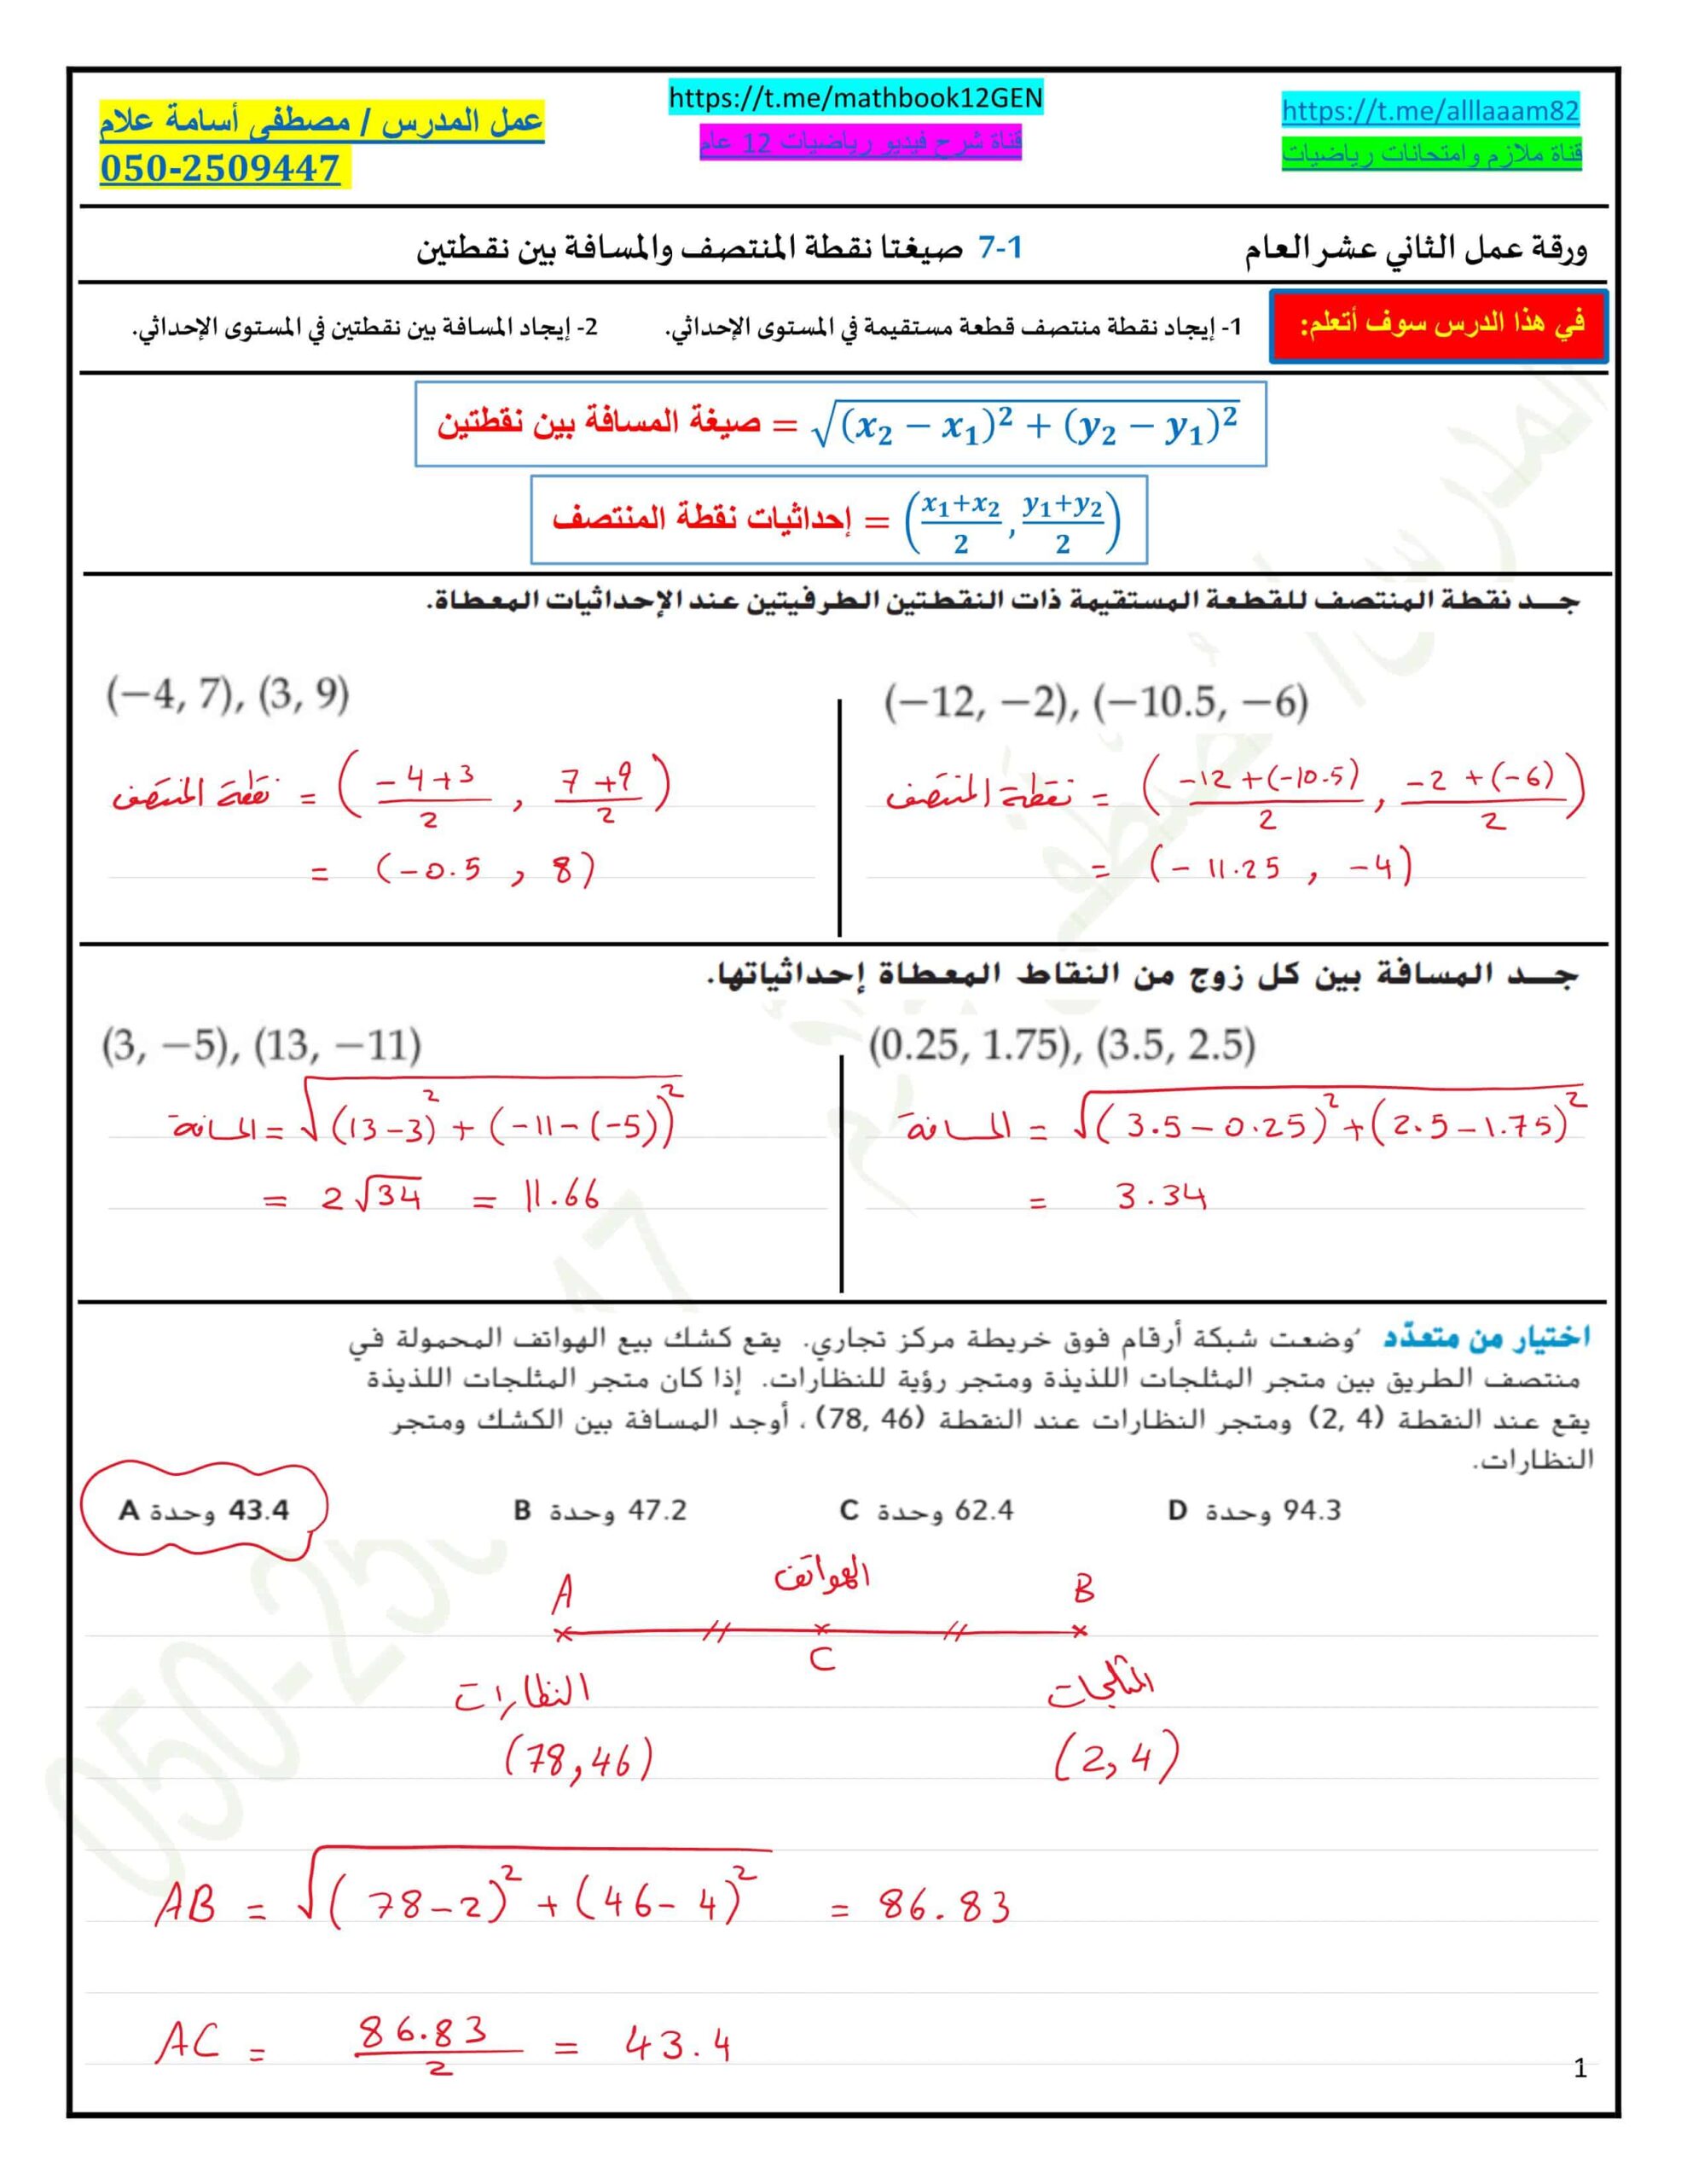 حل أوراق عمل صيغتا نقطة المنتصف والمسافة بين نقطتين الرياضيات المتكاملة الصف الثاني عشر عام